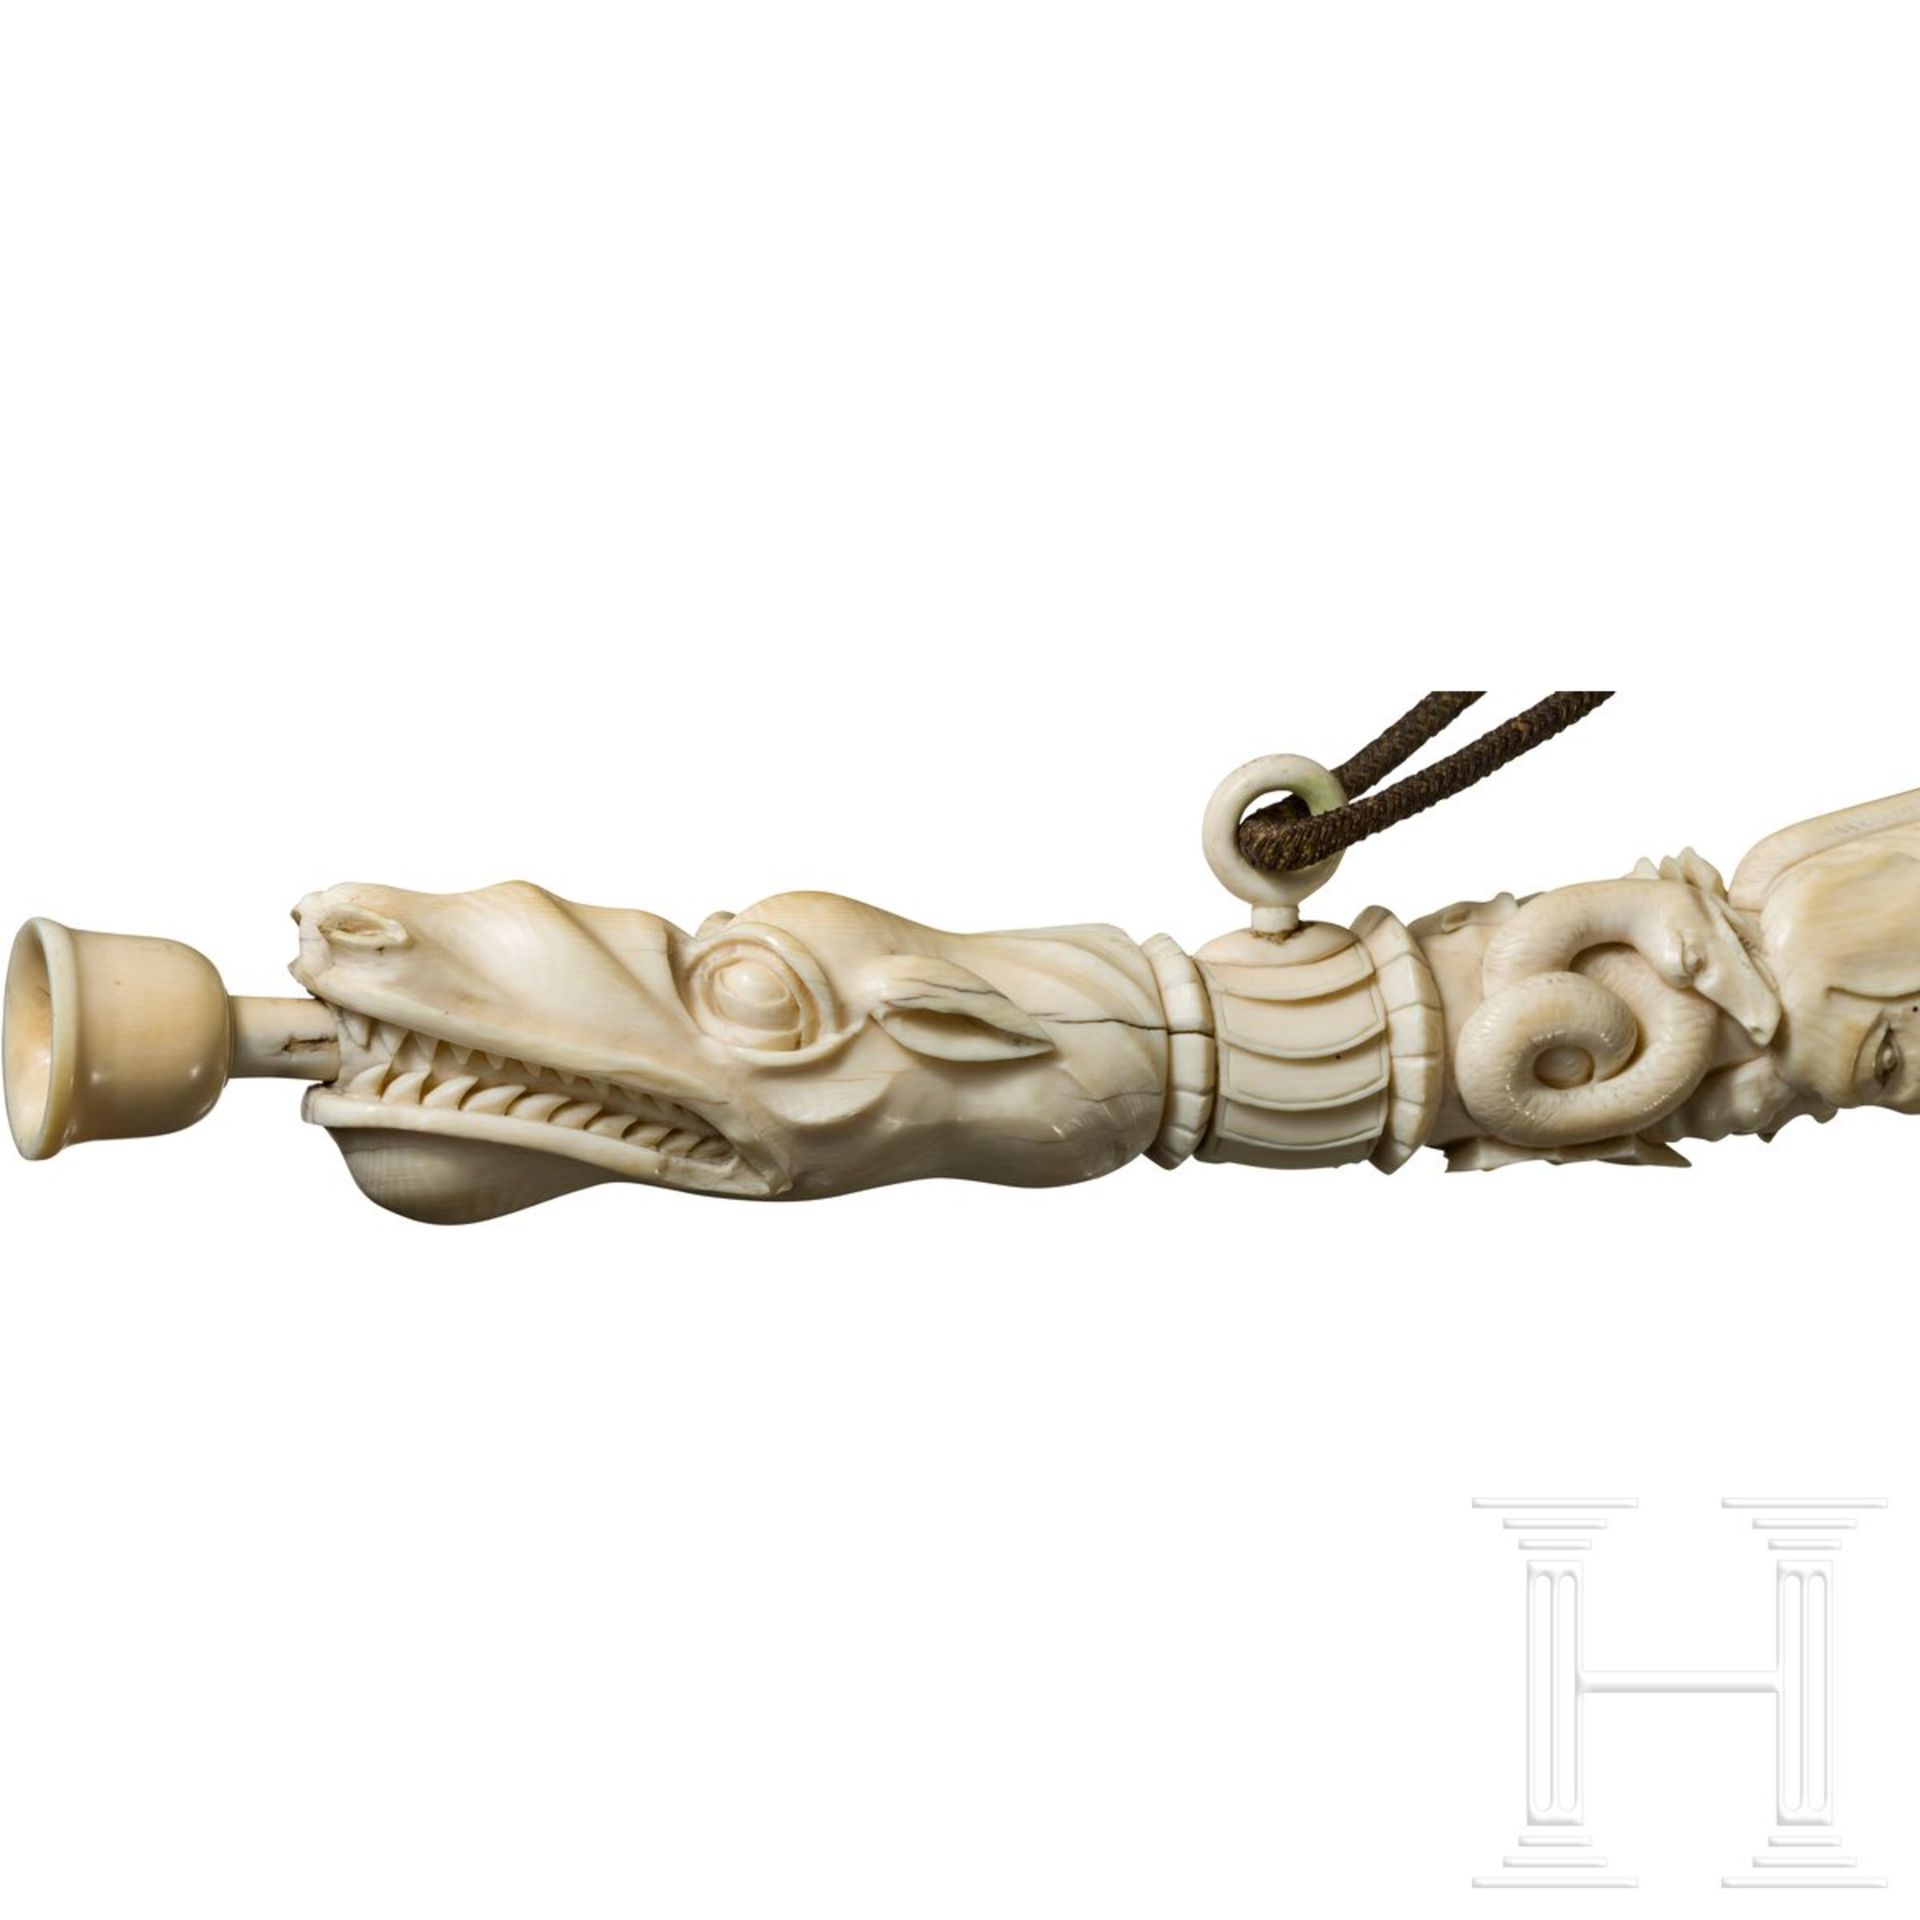 Plastisch beschnitzter Olifant, deutsch, 19. Jhdt.Dreiteilig aus einem mächtigen Elfenbeinzahn, - Bild 6 aus 6